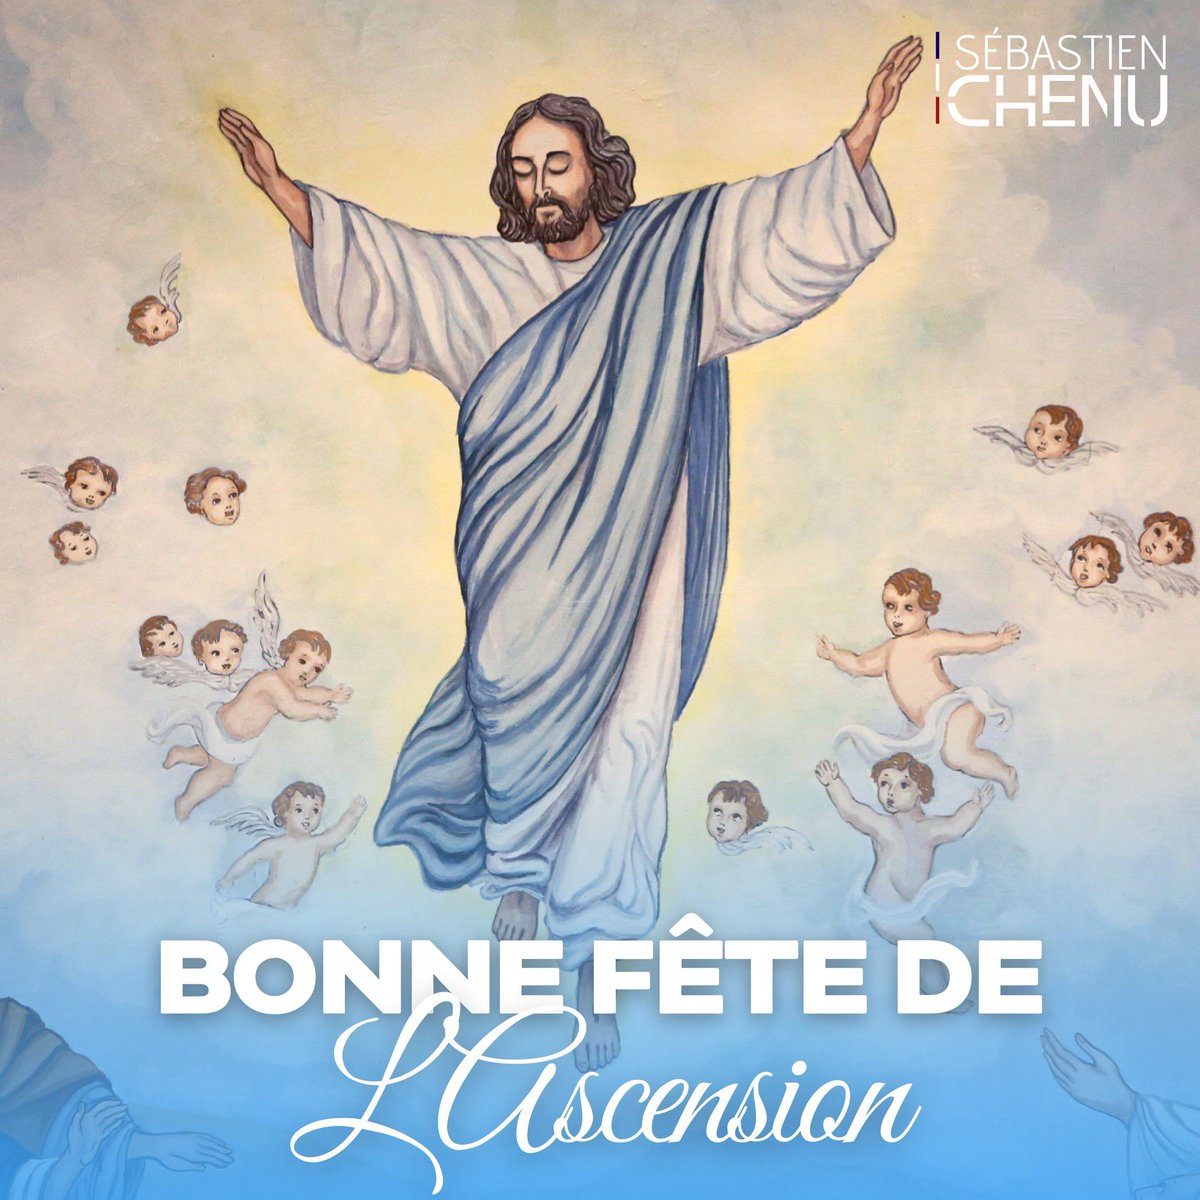 Je souhaite une bonne fête de l’#Ascension qui célèbre la montée de Jésus, à tous les chrétiens! ✝️